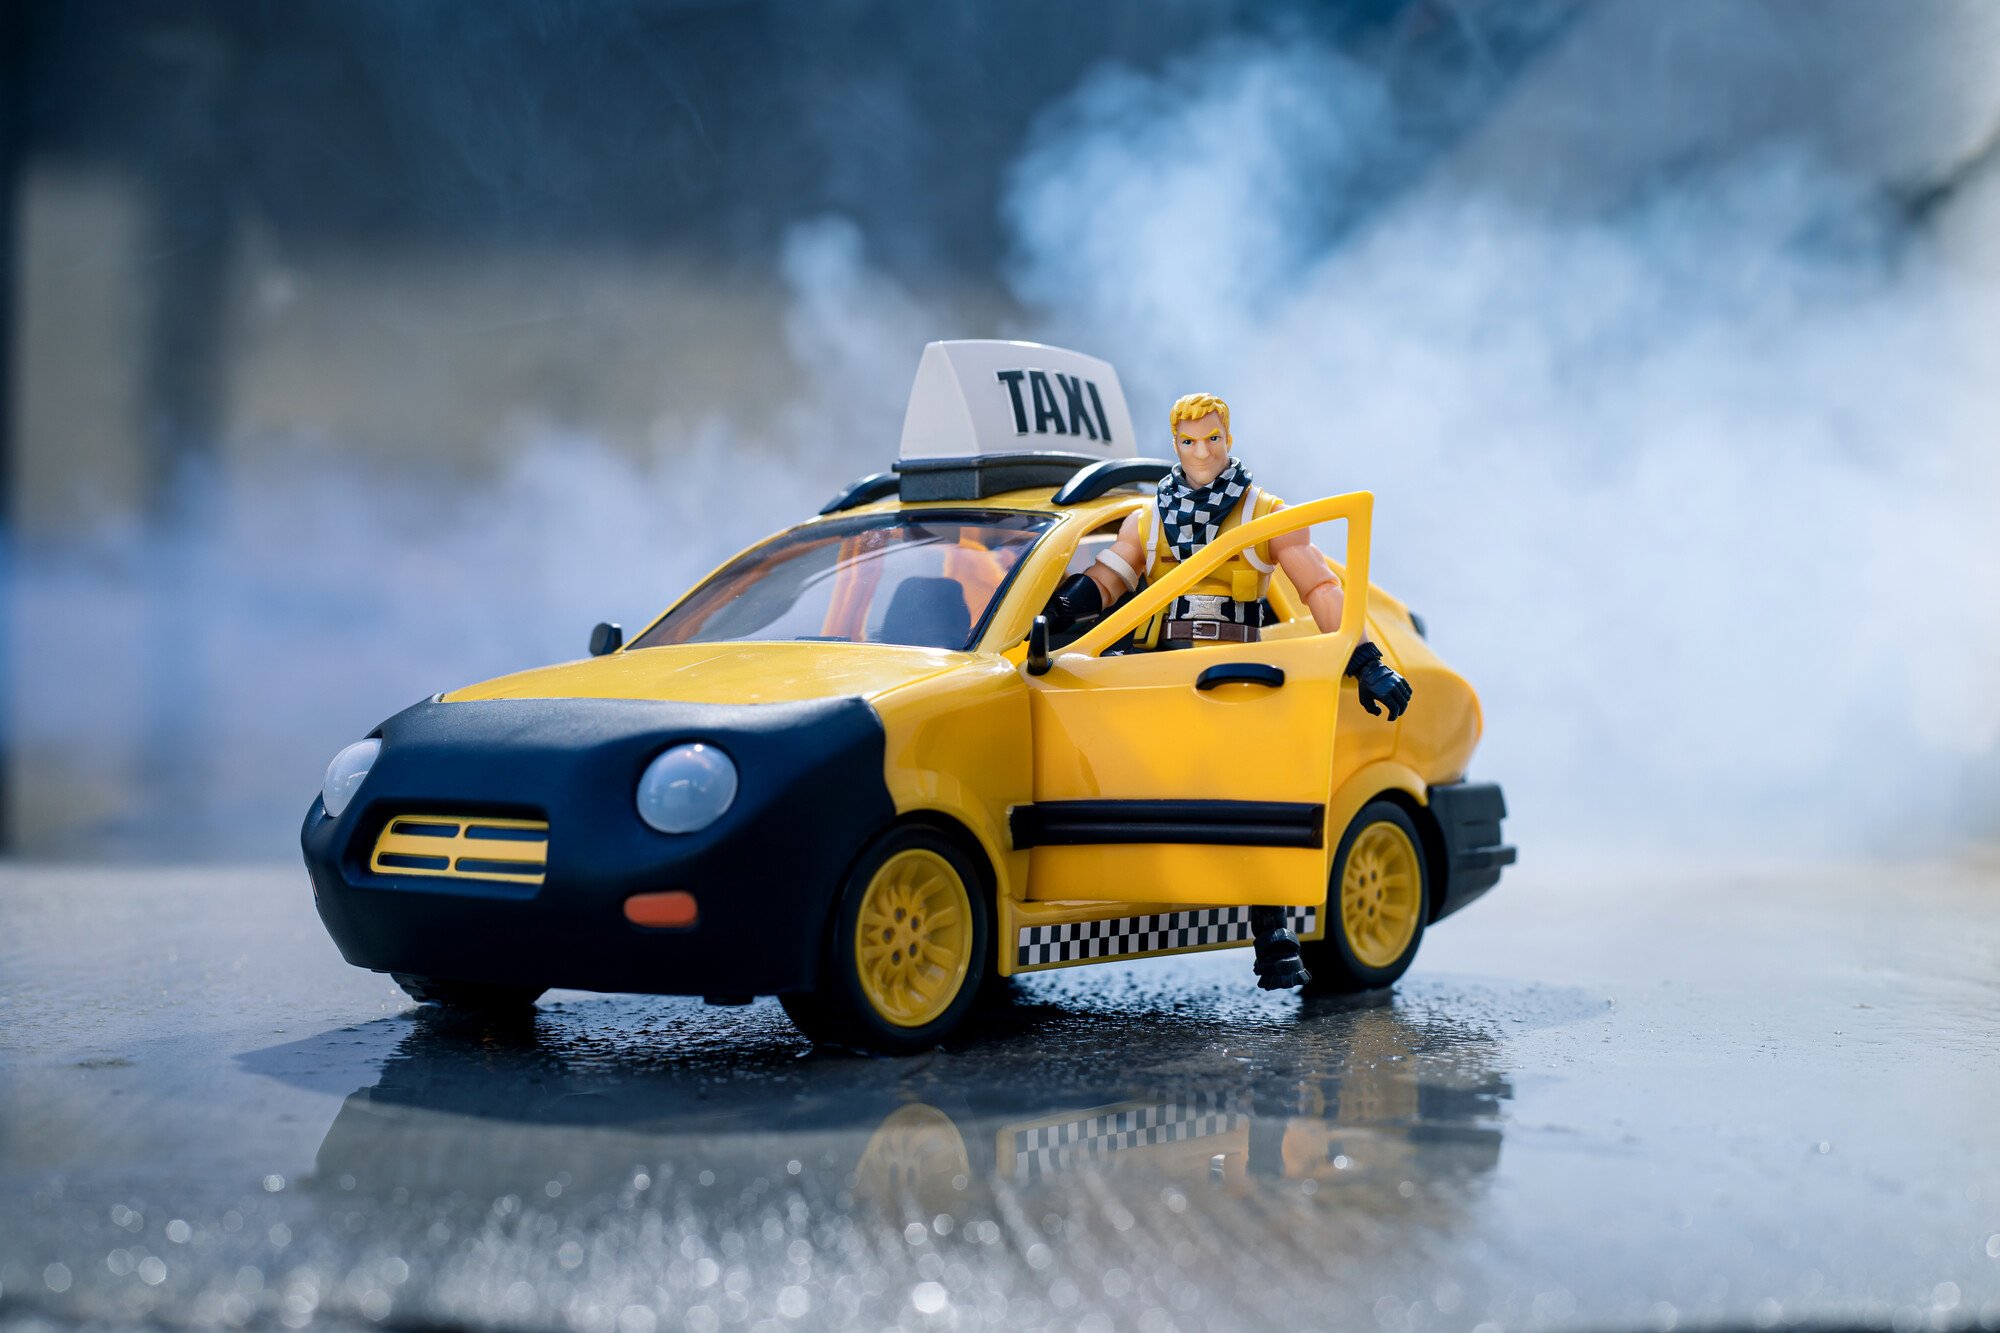 Игровой набор Jazwares Fortnite Joy Ride Vehicle Taxi Cab, автомобиль и фигурка (FNT0817) - фото 11